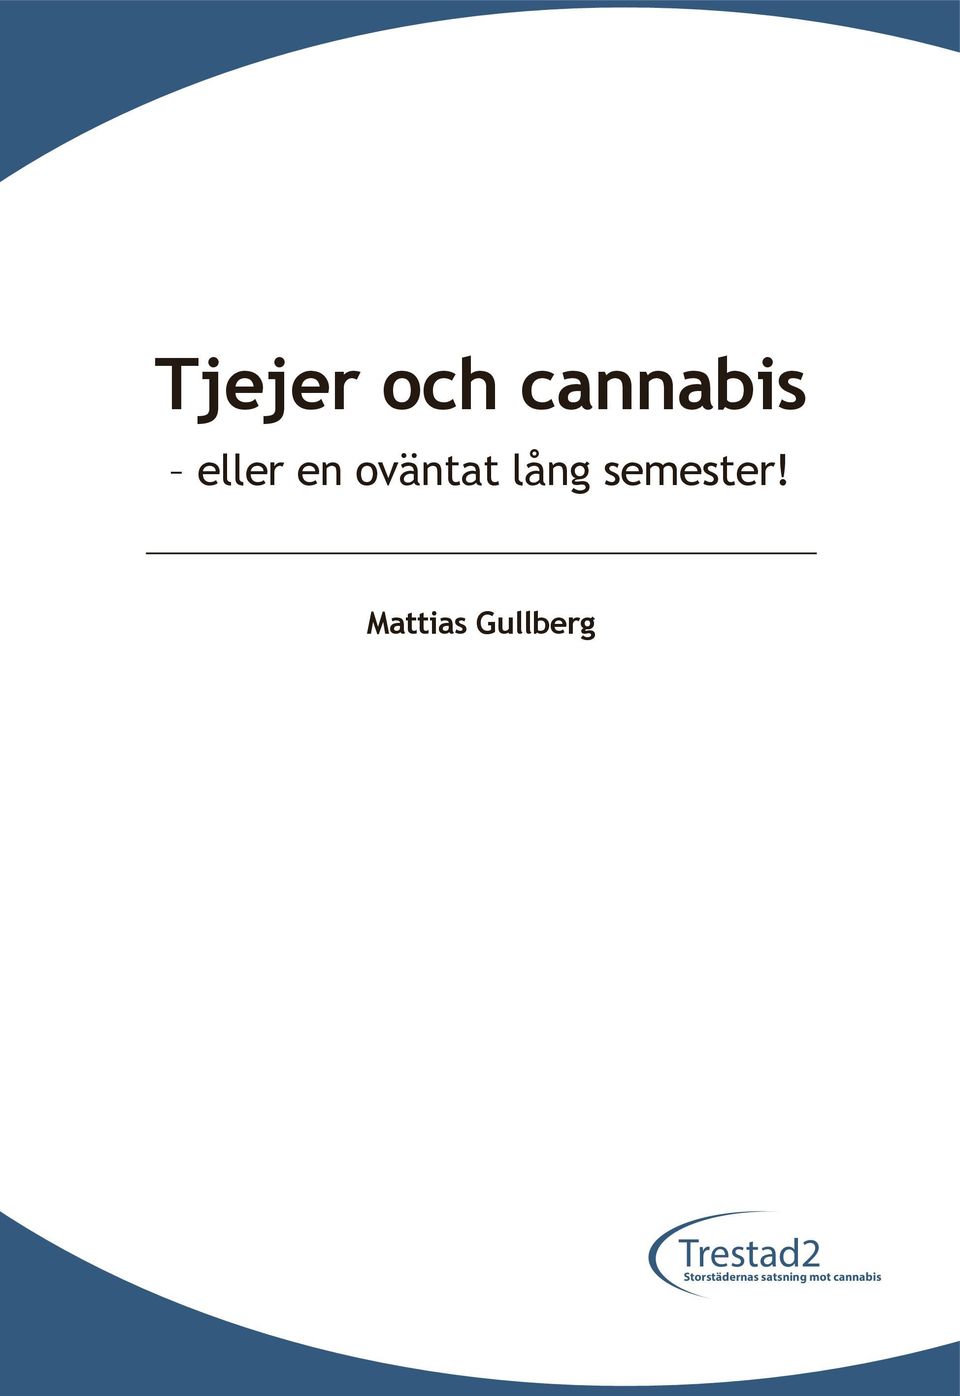 Mattias Gullberg Trestad2